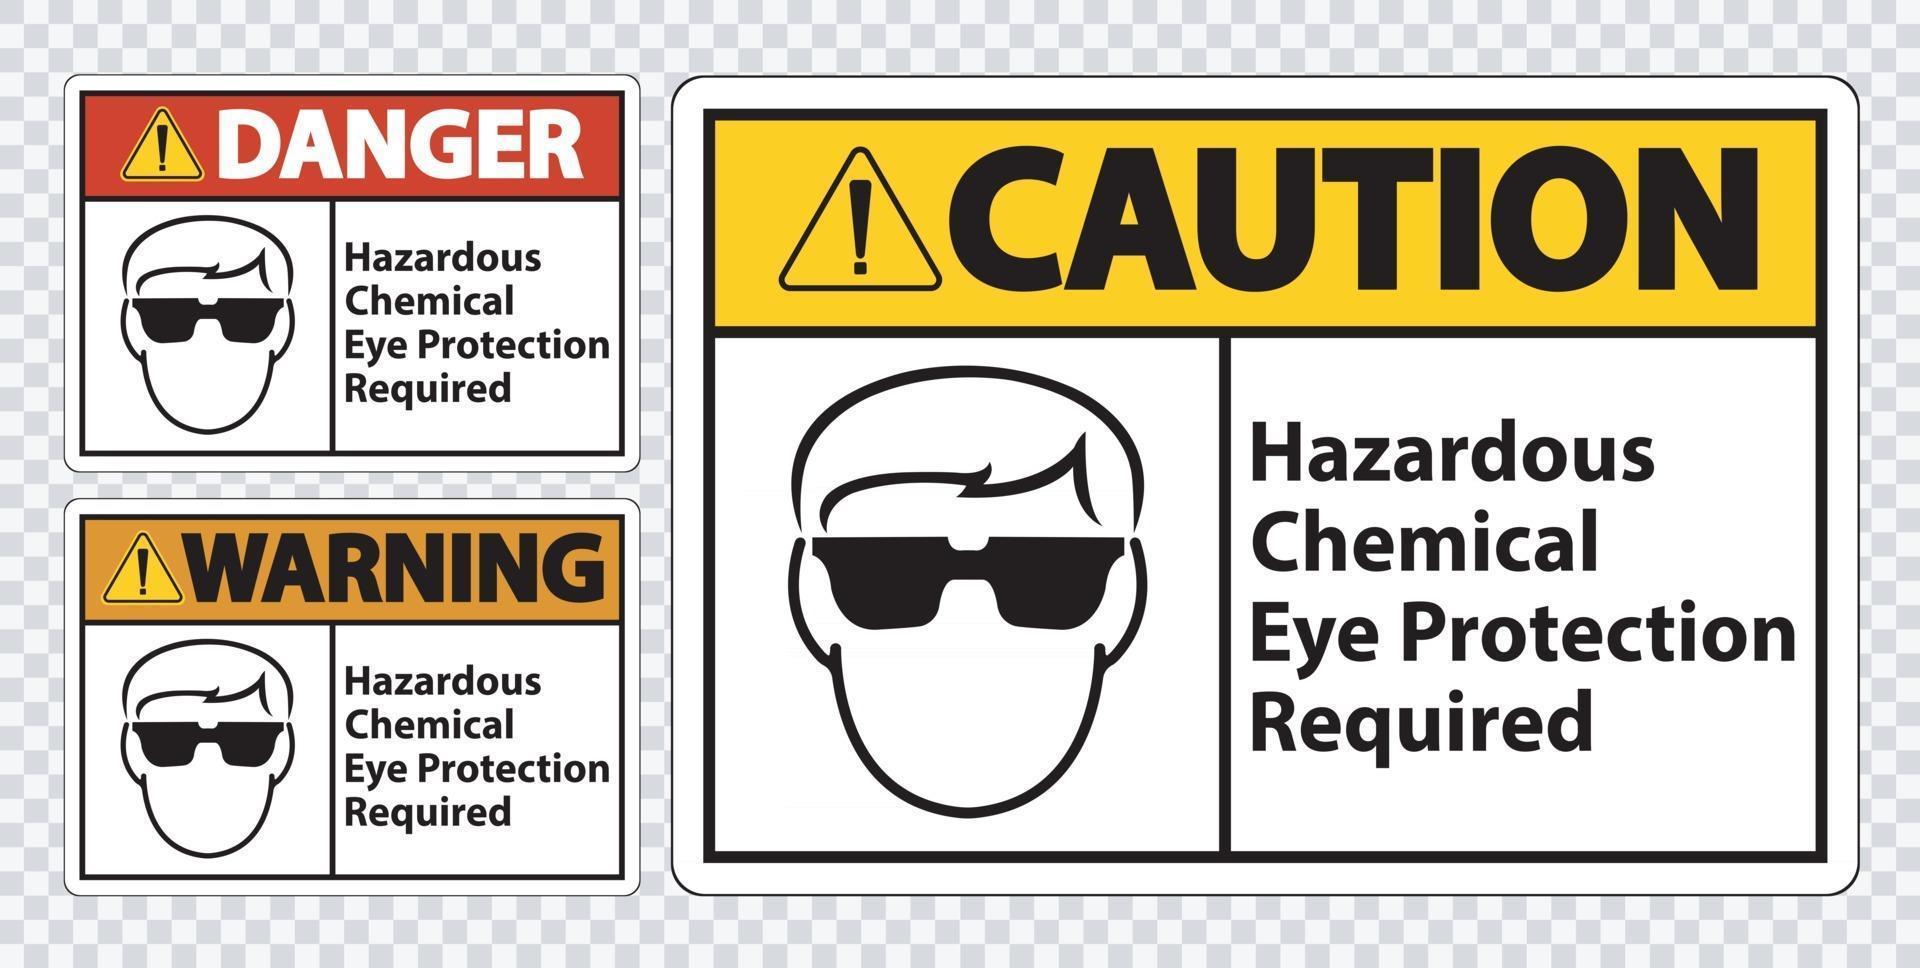 Isoler le signe symbole dangereux de protection des yeux chimiques sur fond transparent, illustration vectorielle vecteur